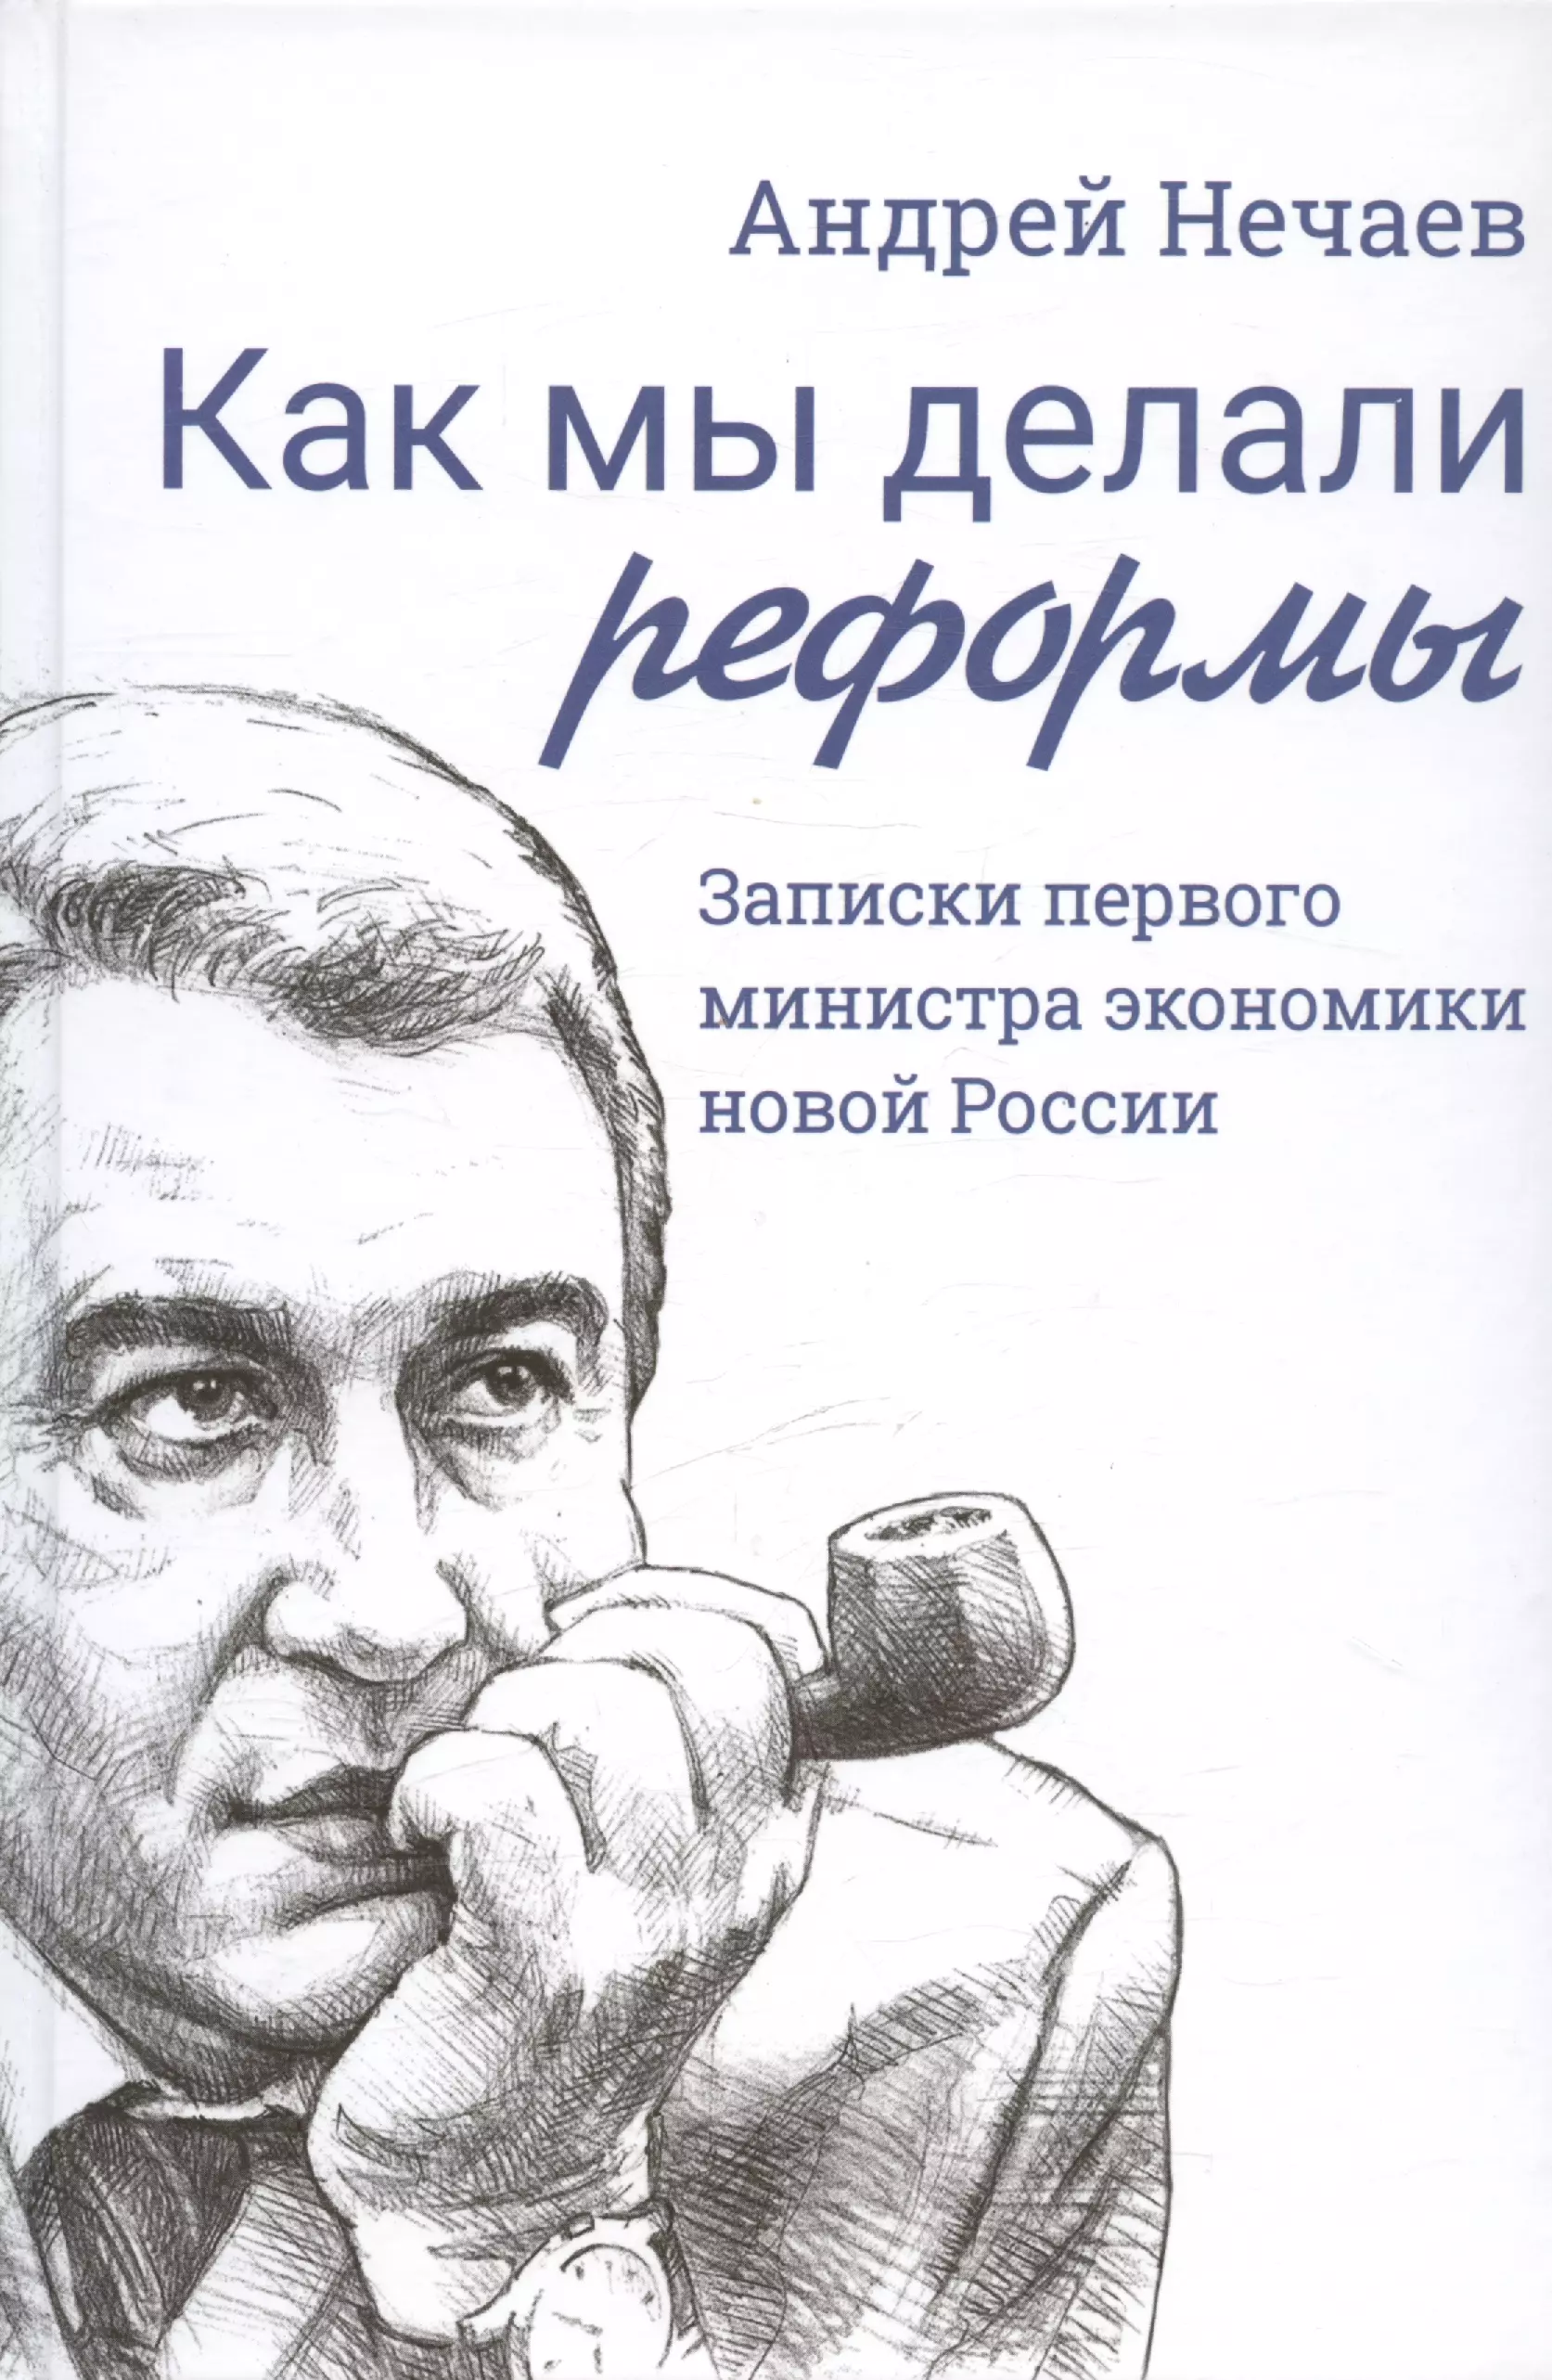 Нечаев Андрей Алексеевич Как мы делали реформы: записки первого министра экономики новой России